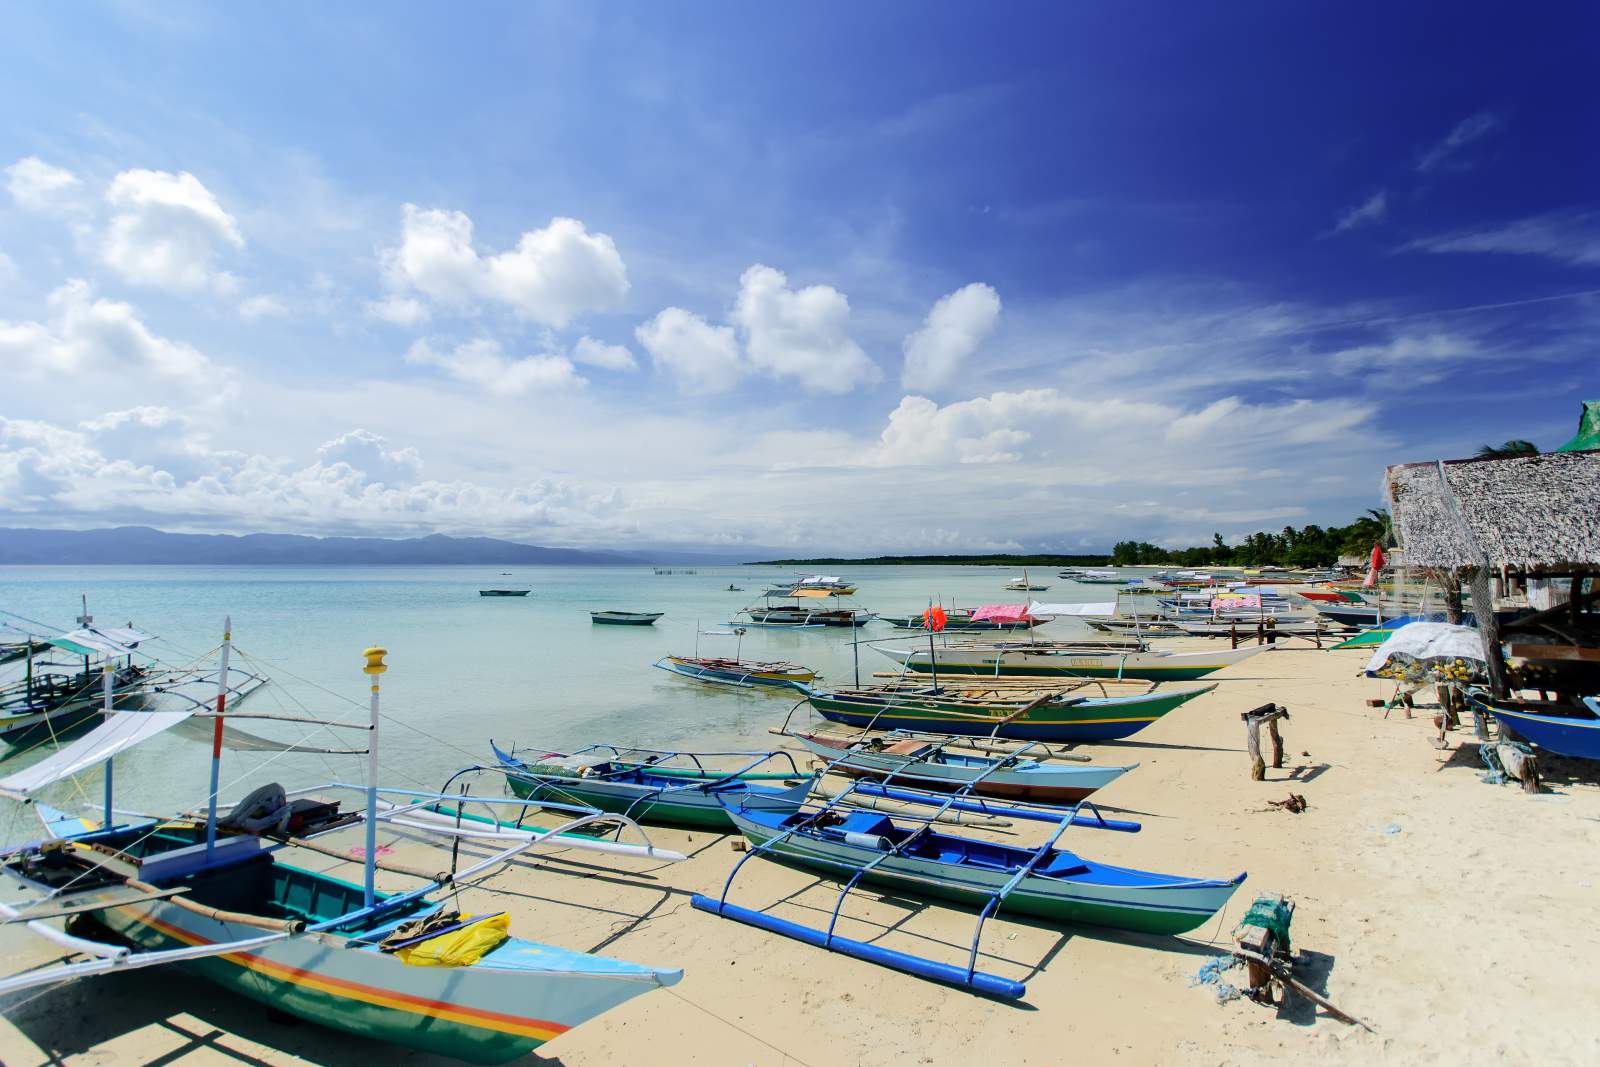 Cagbalete Island Bancas parked near Sabang, Barangay Uno